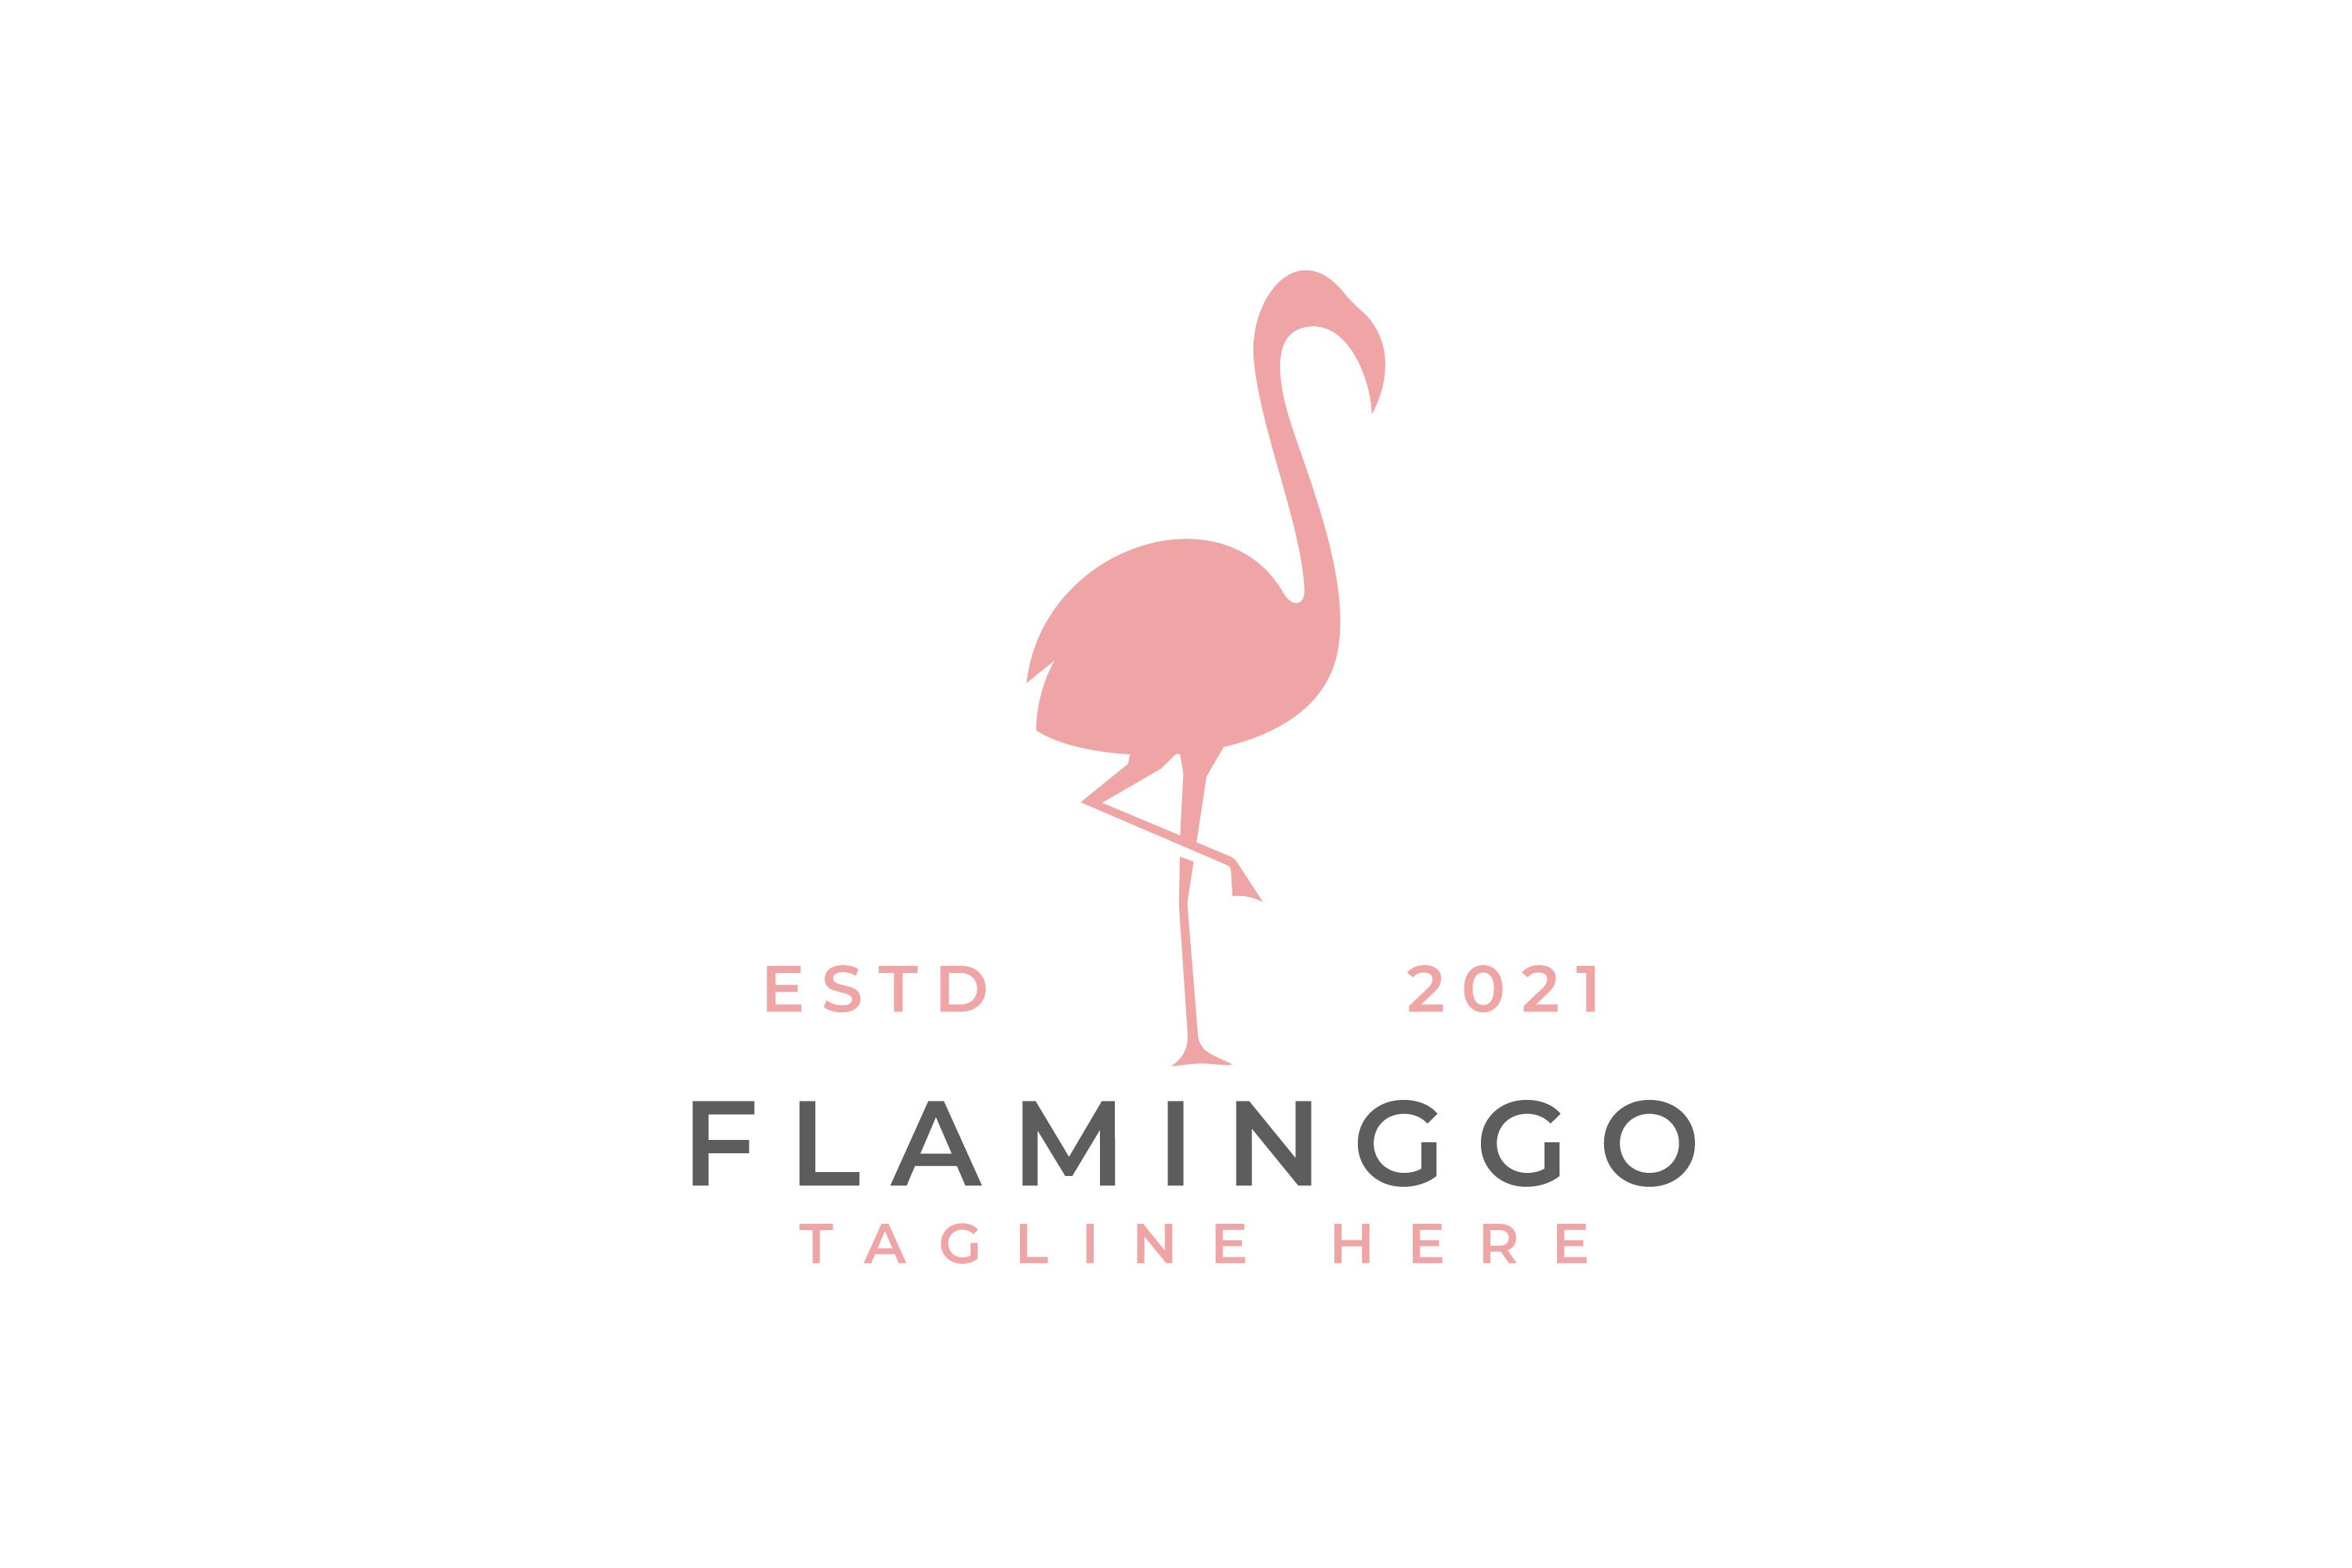 Flamingo logo design vector cover image.